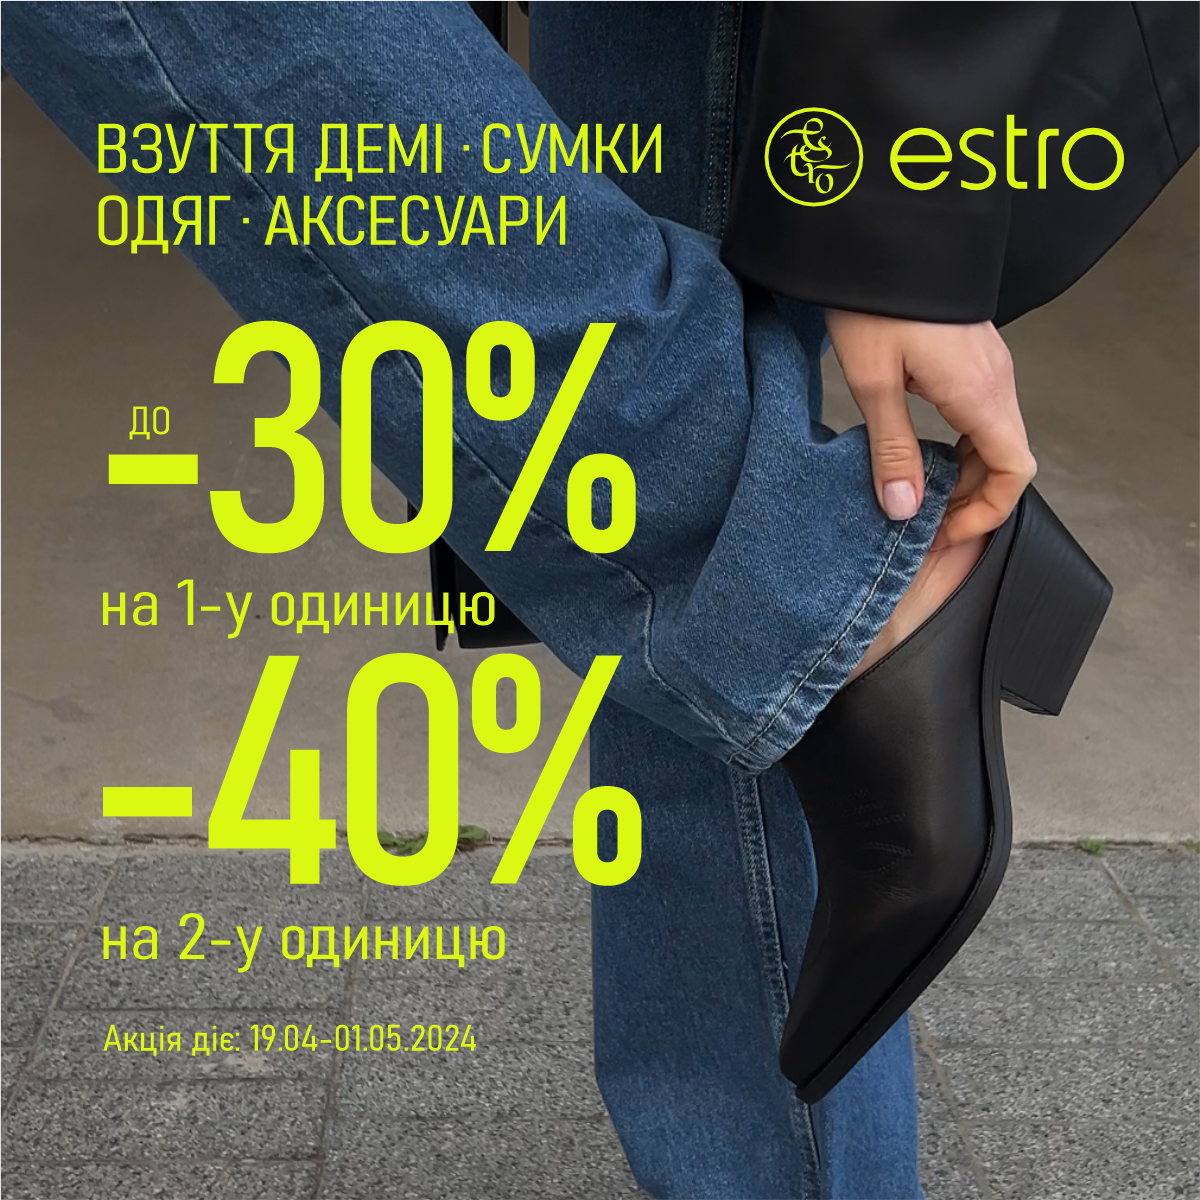 Discounts up to -40% at Estro